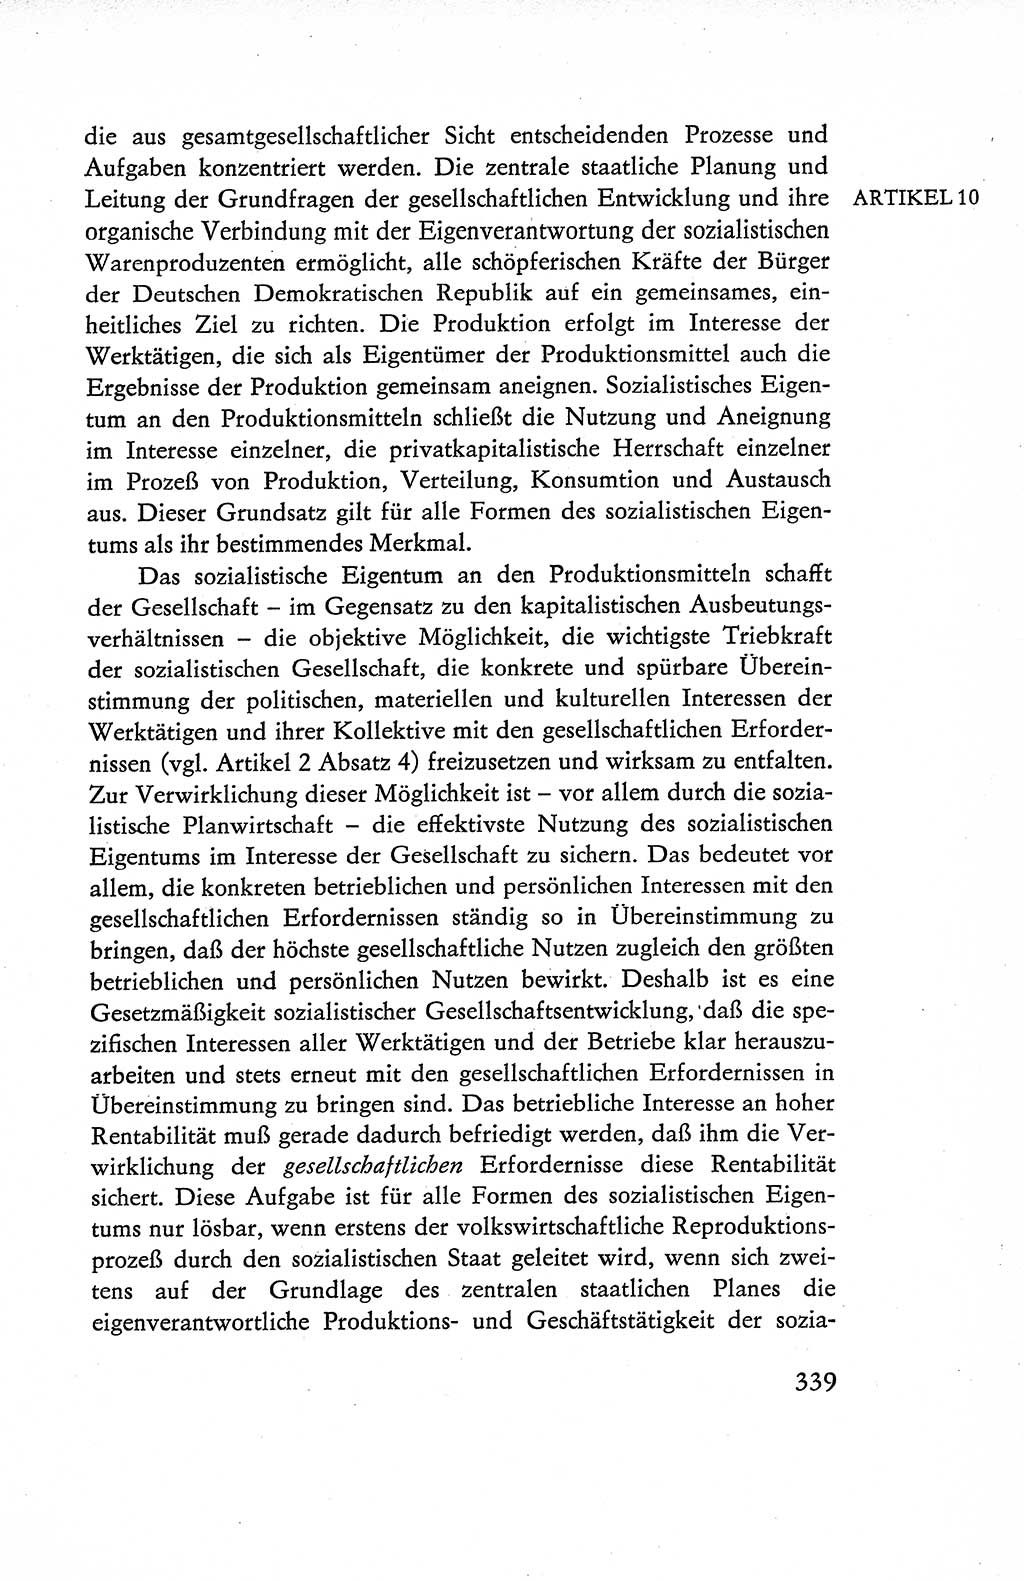 Verfassung der Deutschen Demokratischen Republik (DDR), Dokumente, Kommentar 1969, Band 1, Seite 339 (Verf. DDR Dok. Komm. 1969, Bd. 1, S. 339)